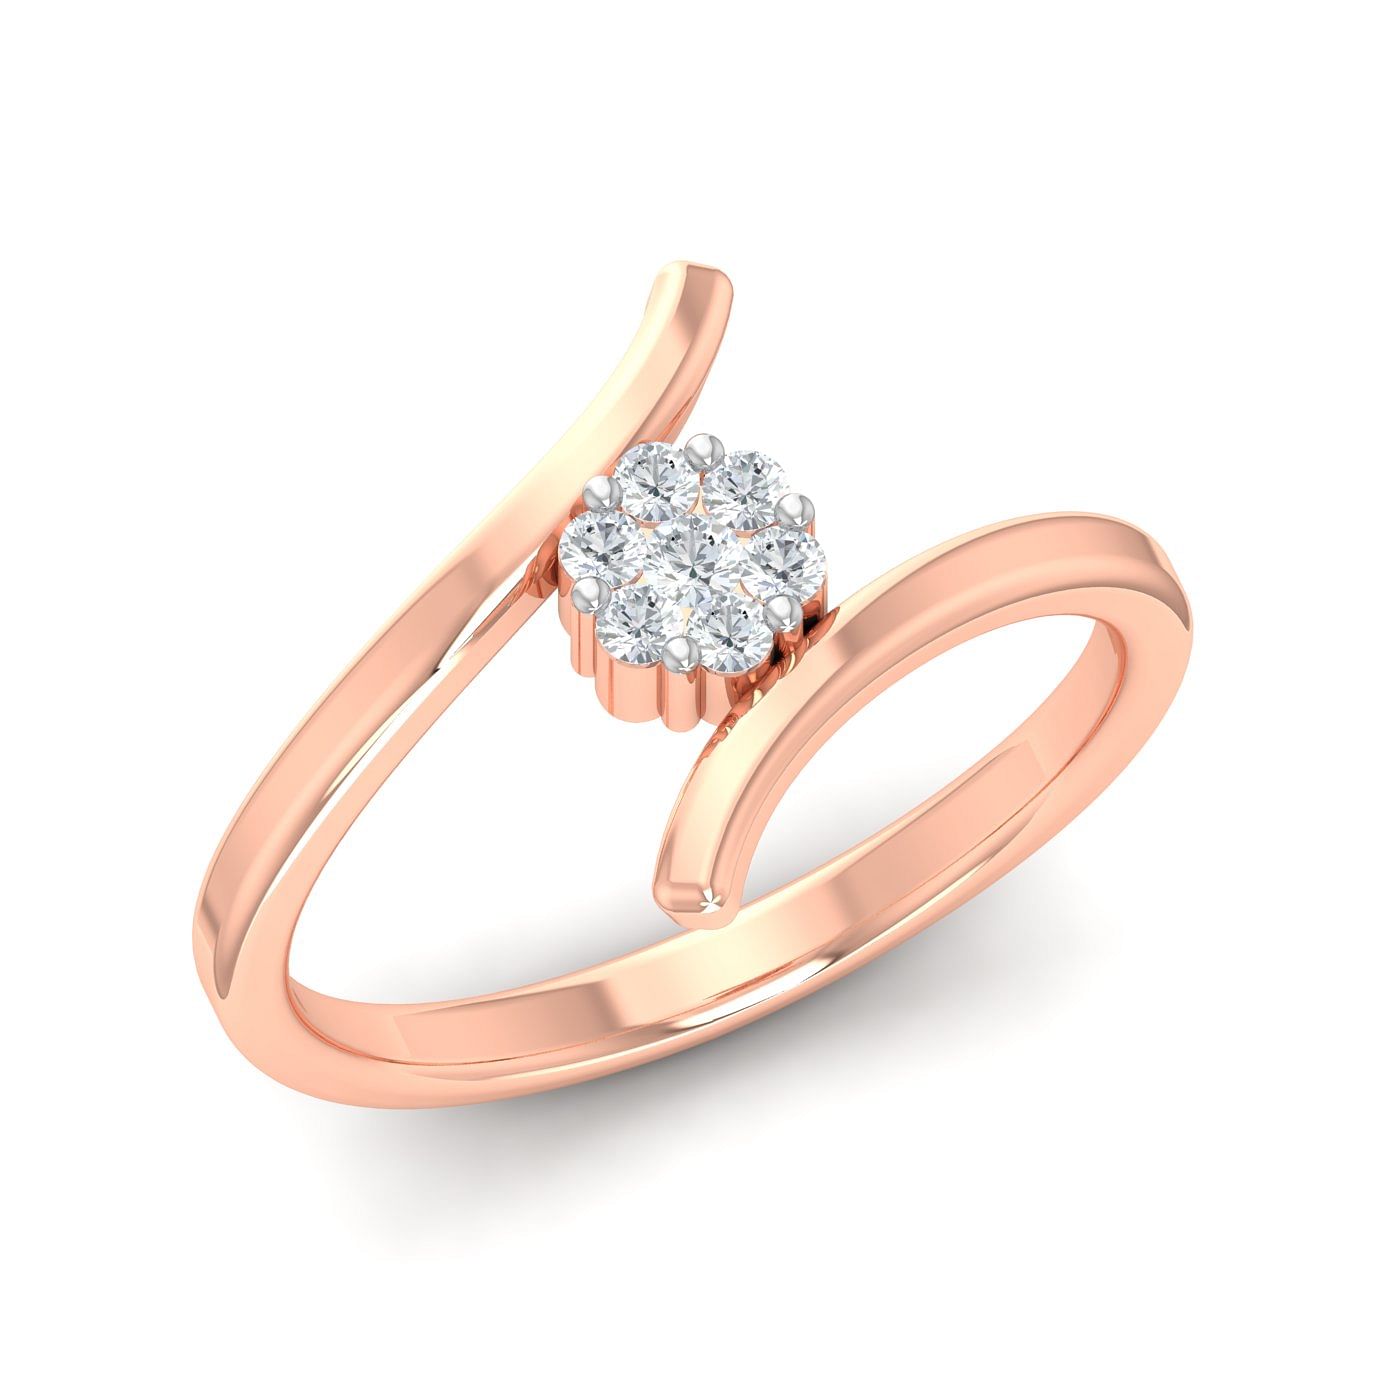 0.90 carat Platinum - Danica Engagement Ring at Best Prices in India |  SarvadaJewels.com